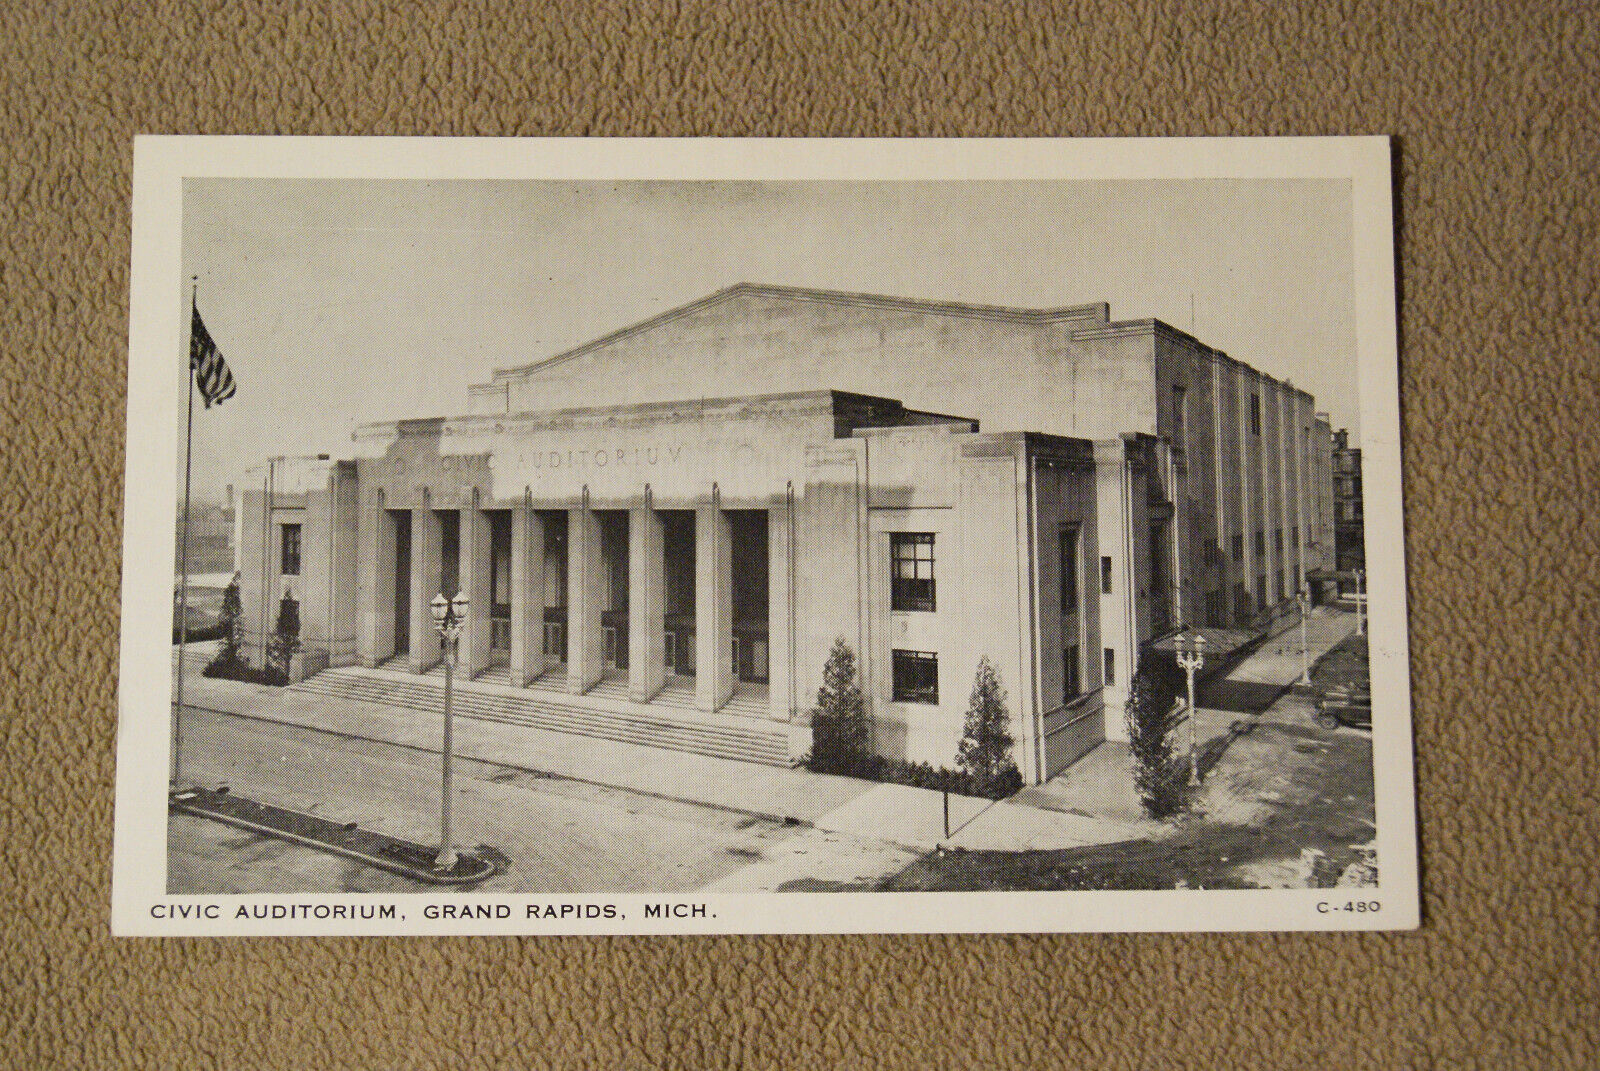 Civic Auditorium - Grand Rapids, Michigan